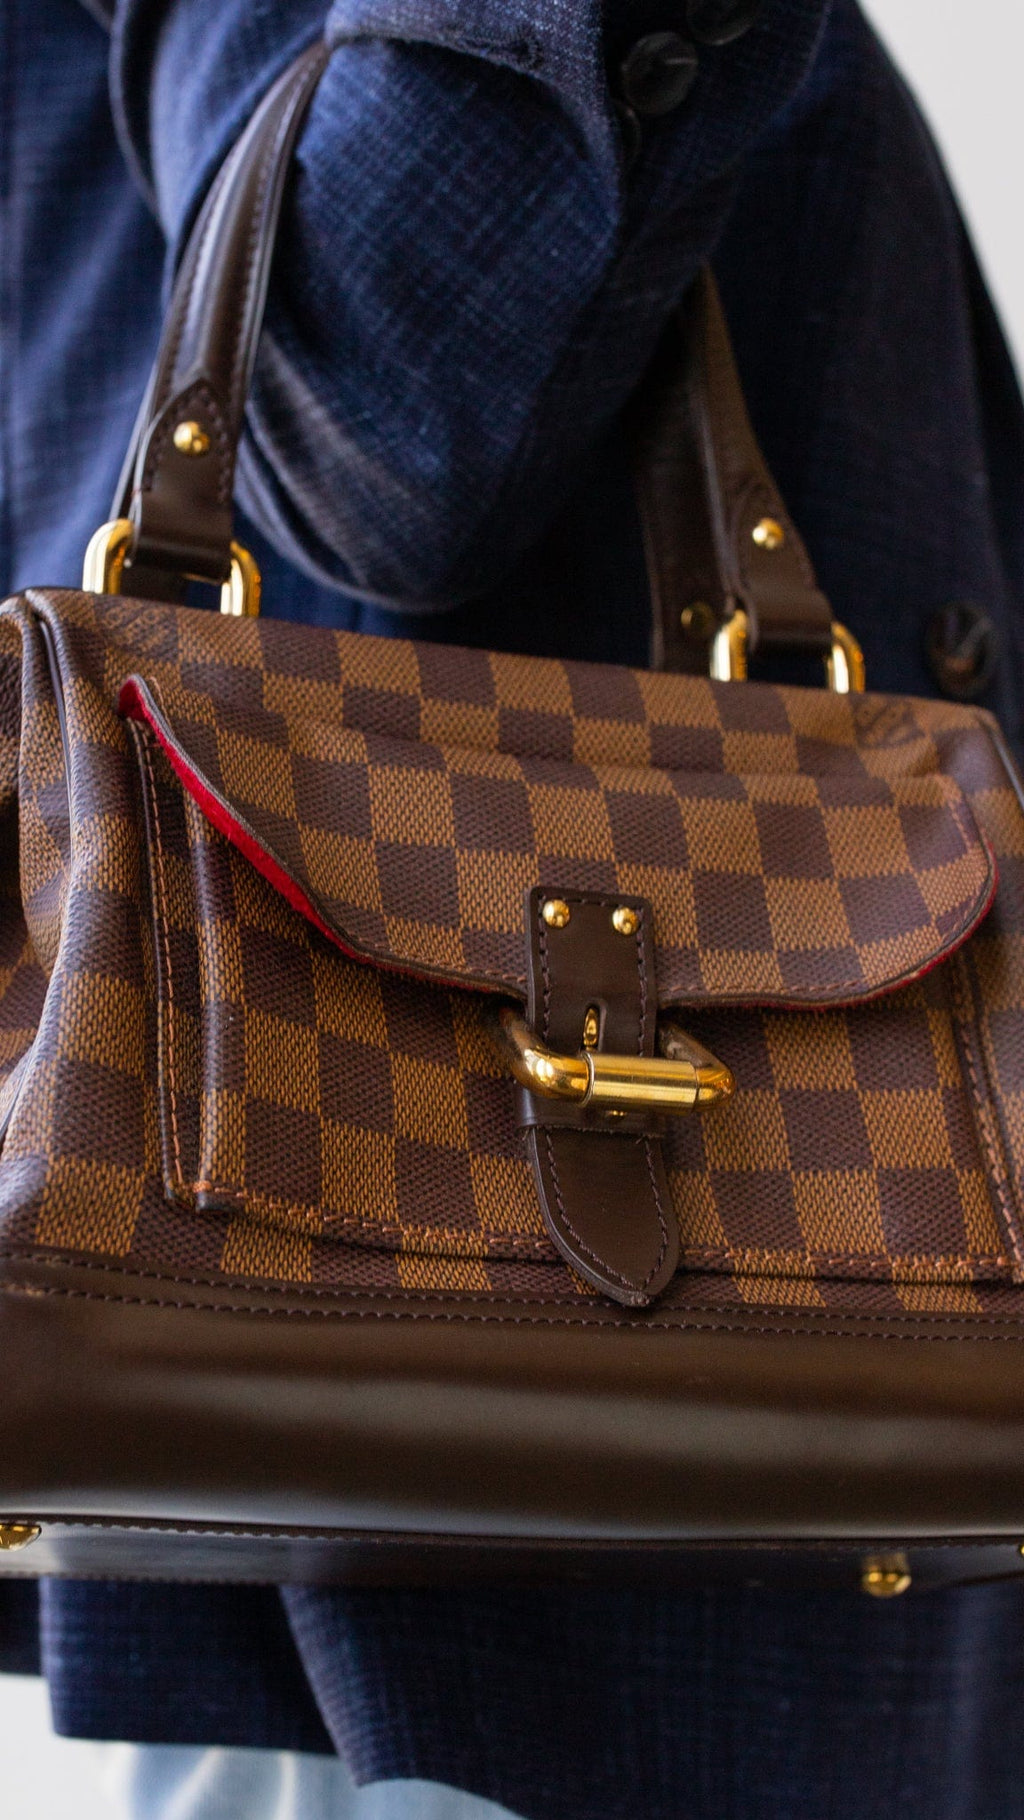 LOUIS VUITTON Louis Vuitton Knightsbridge Handbag N51201 Damier